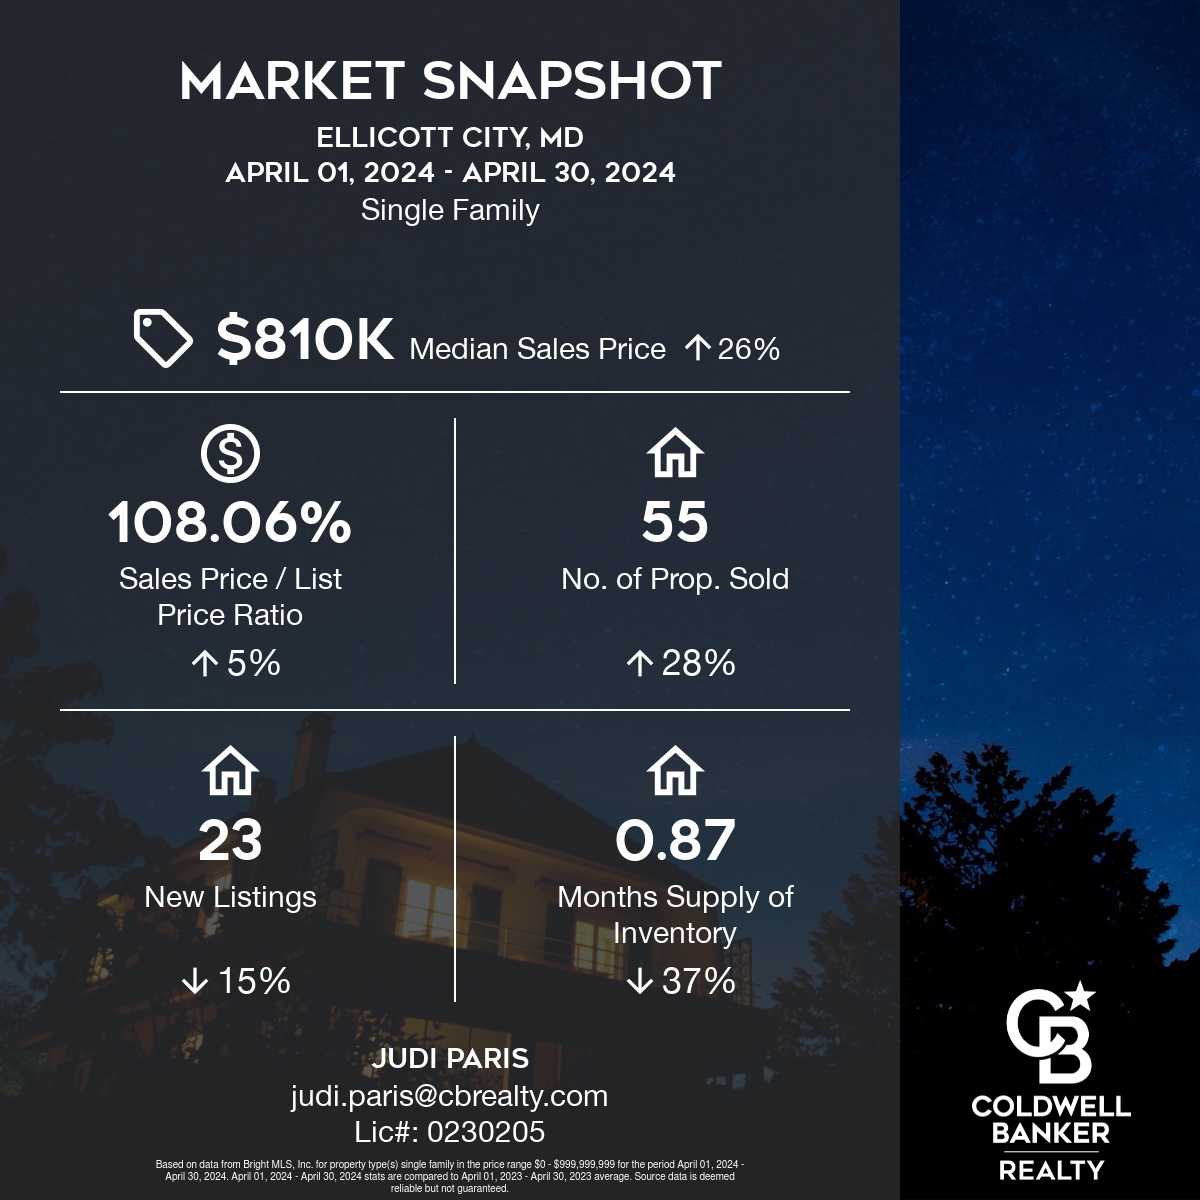 Real Estate Market Snapshot for Ellicott City, MD in April '24